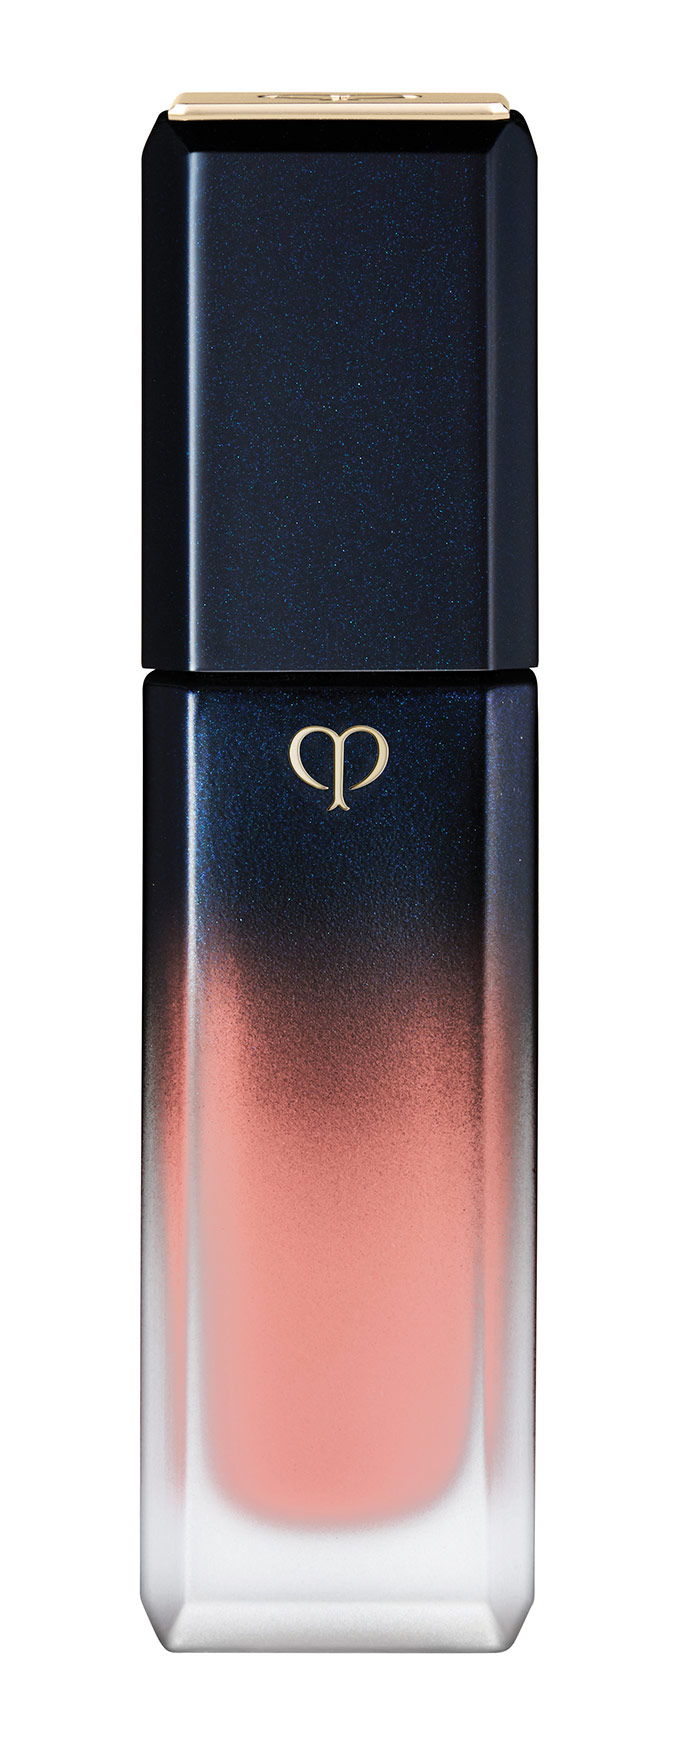 Lipstick from Cle de Peau Beauté